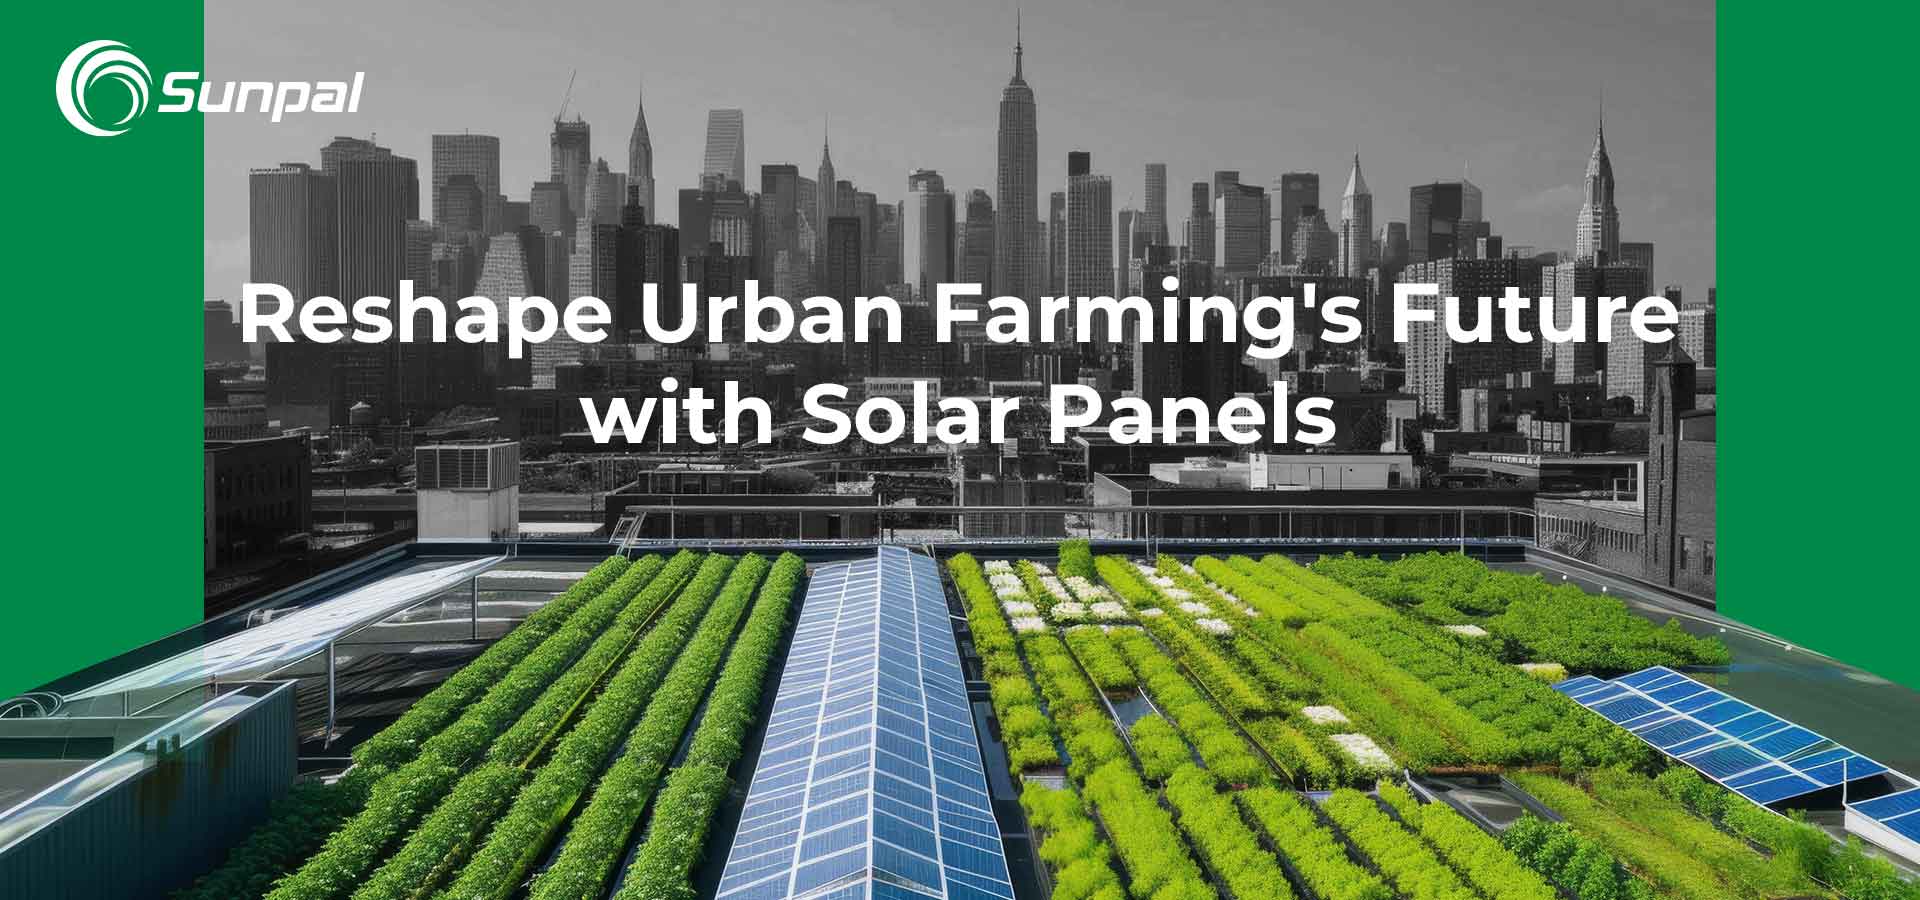 Dachy fotowoltaiczne: przekształcanie przyszłości rolnictwa miejskiego